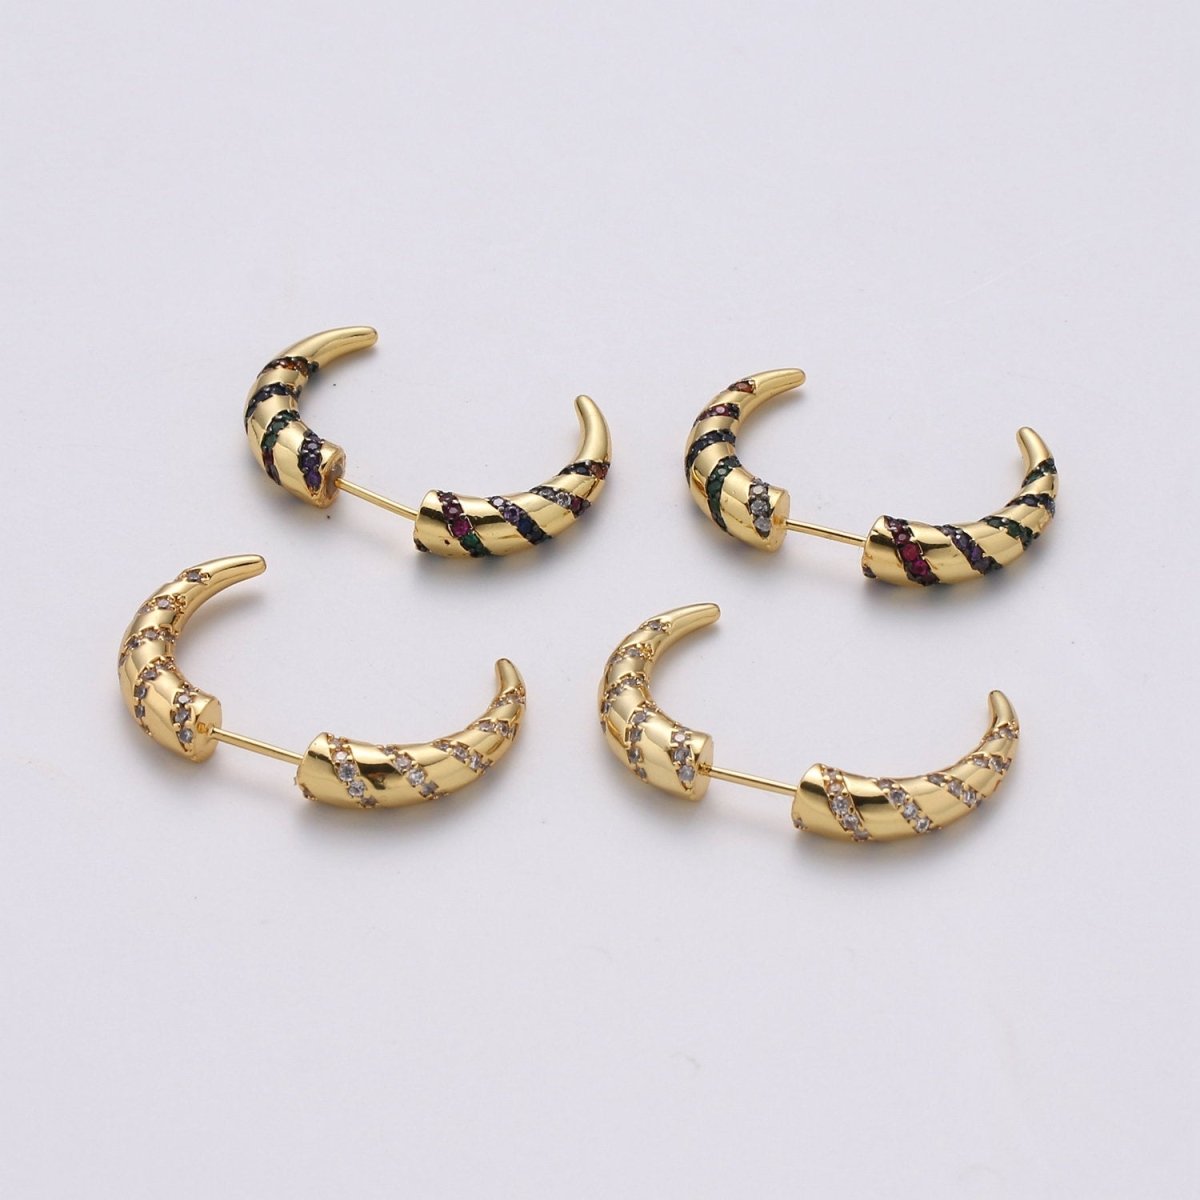 Gold Crescent moon earrings / Horn earrings / Half Moon Earrings / Celestial Stud earrings Micro Pave Earring Boho earrings Gift For Her, K-567 - DLUXCA